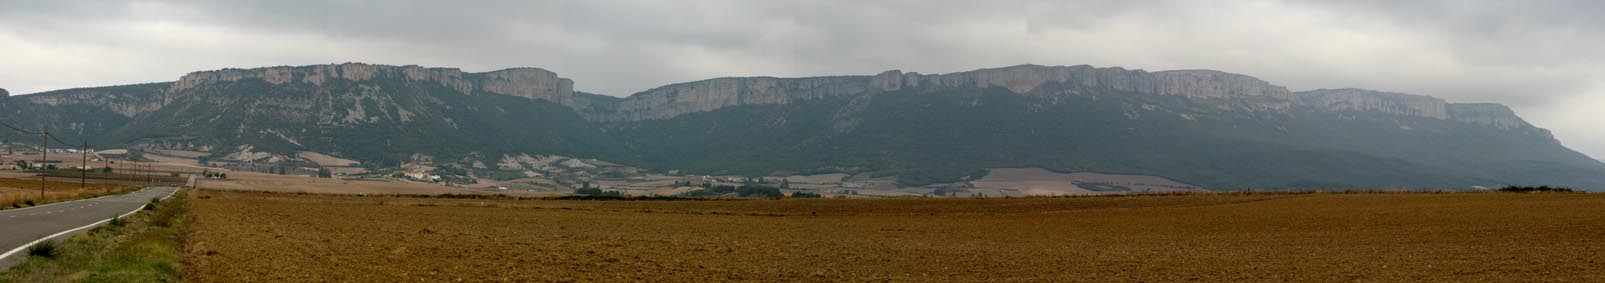 Vua panoramique de la Sierra de Lokiz.